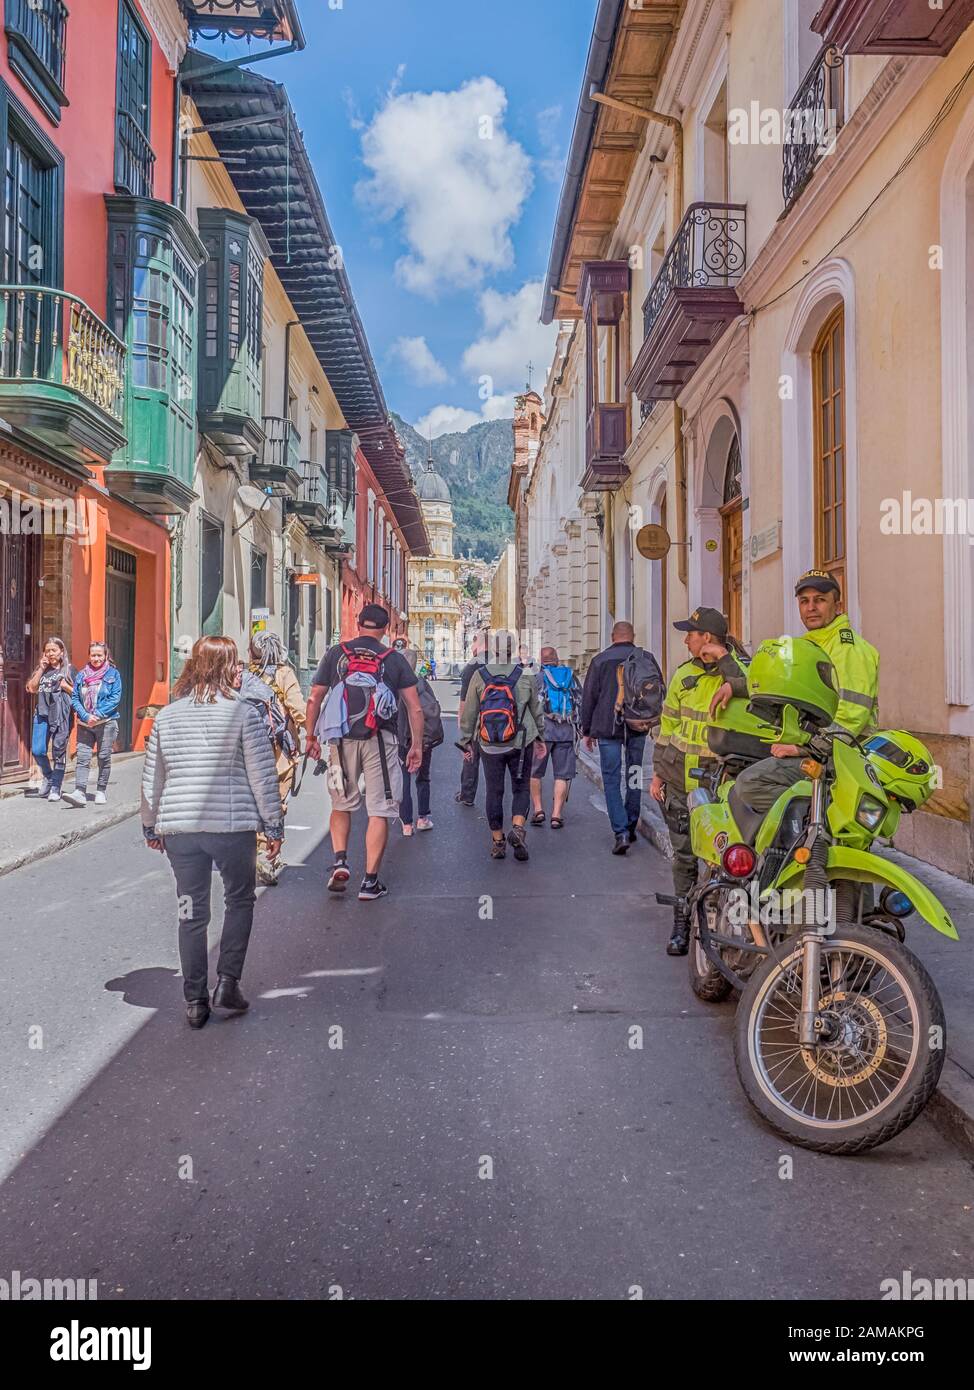 Bogota, Colombie - 12 septembre 2019: Rue de Bogota avec maisons coloniales colorées, foule du peuple, policier avec moto et montagne vi Banque D'Images